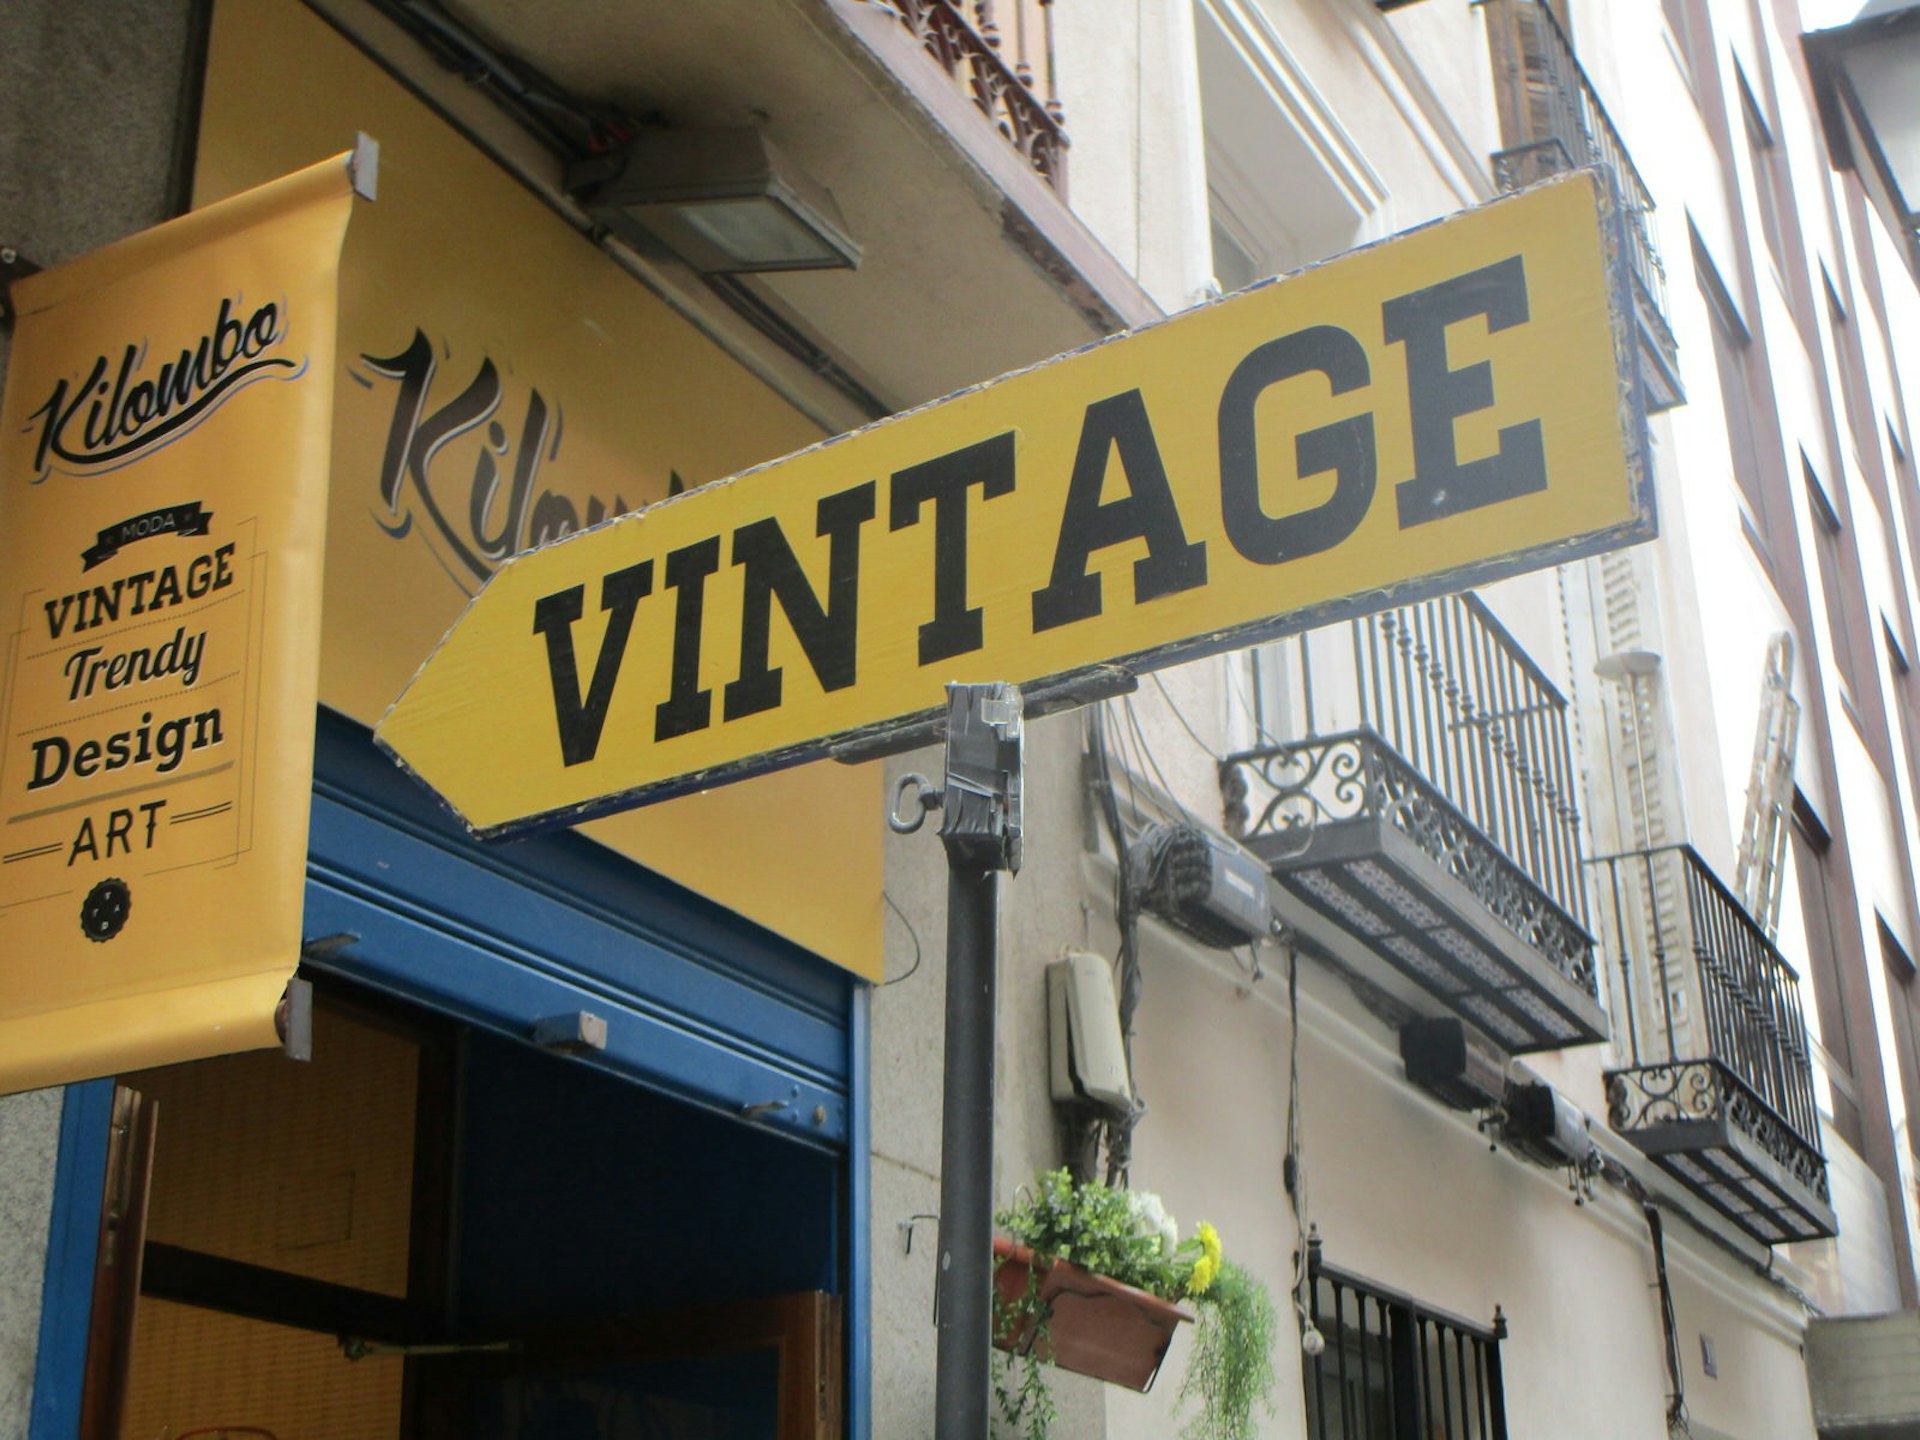 Vintage shop sign Madrid, Spain